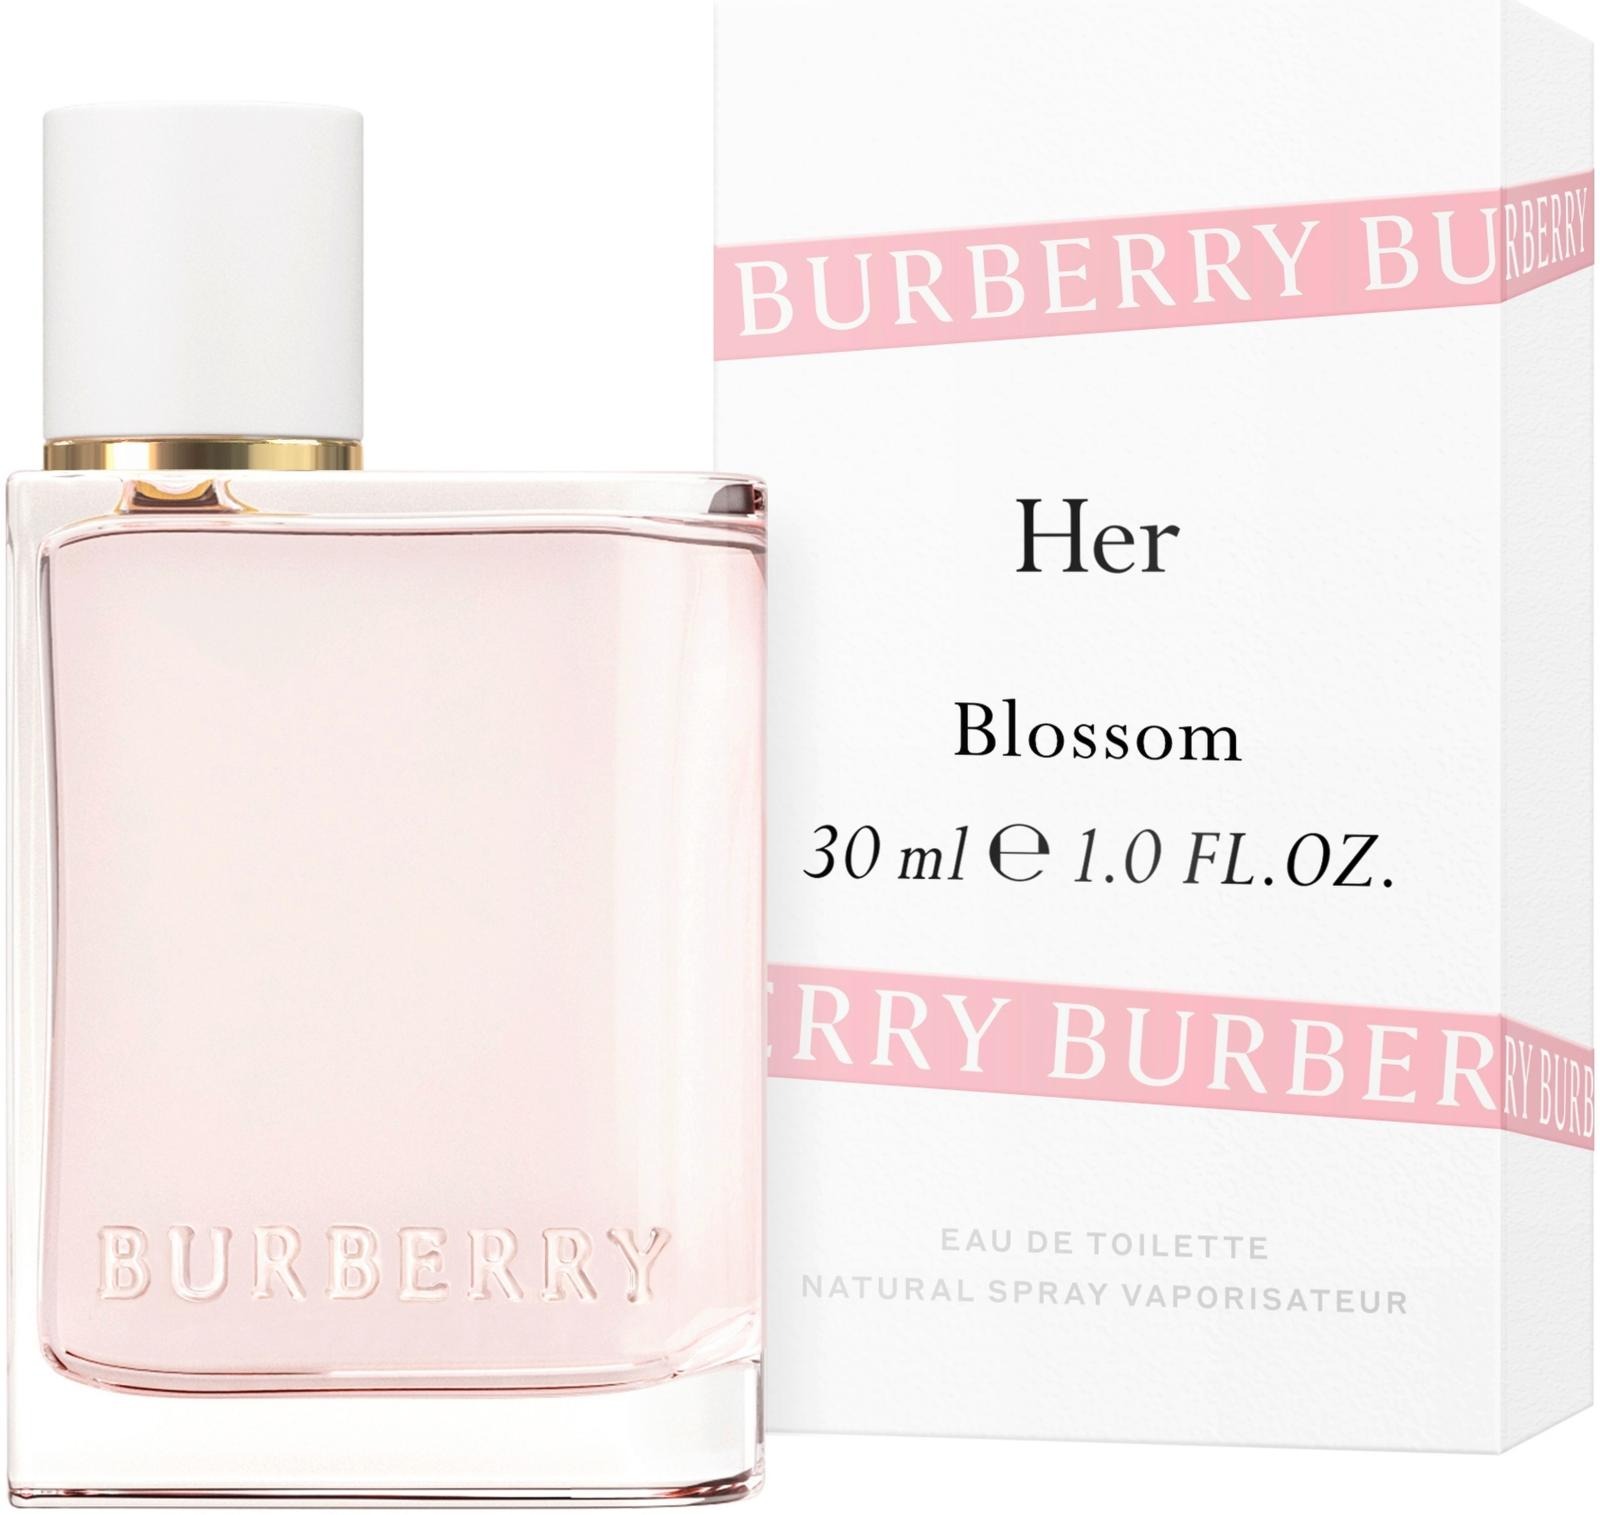 burberry for her blossom